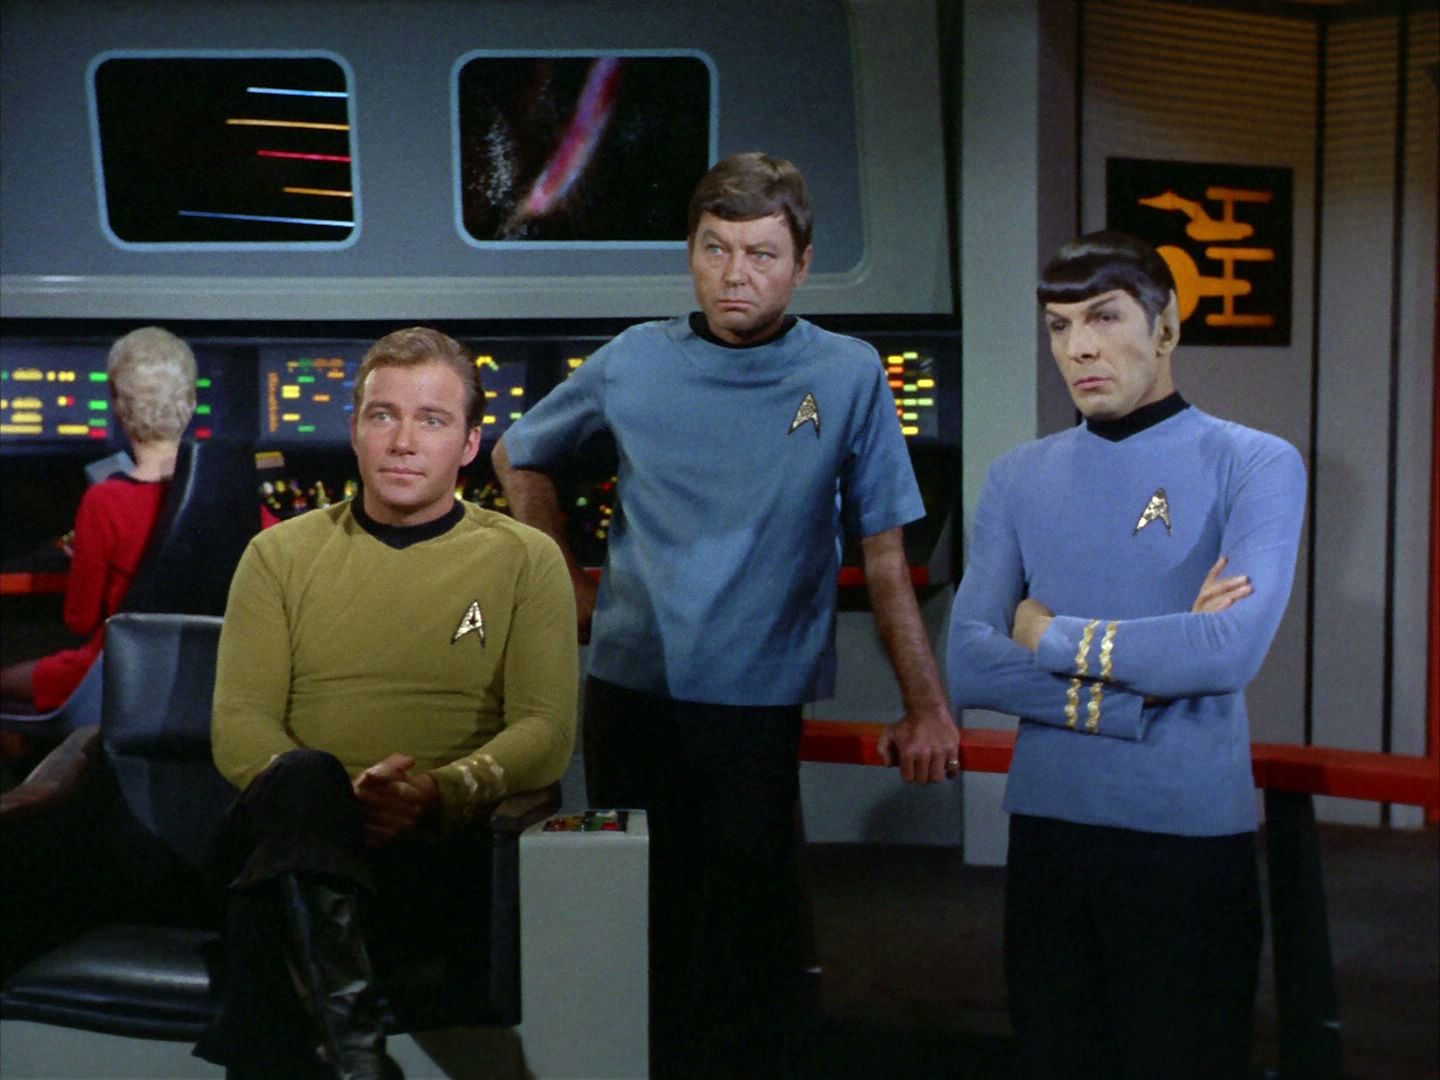 star trek tripulação - Onde nenhum homem jamais esteve (ainda): Star Trek como precursor de invenções (V.2, N.9, P.2, 2019)